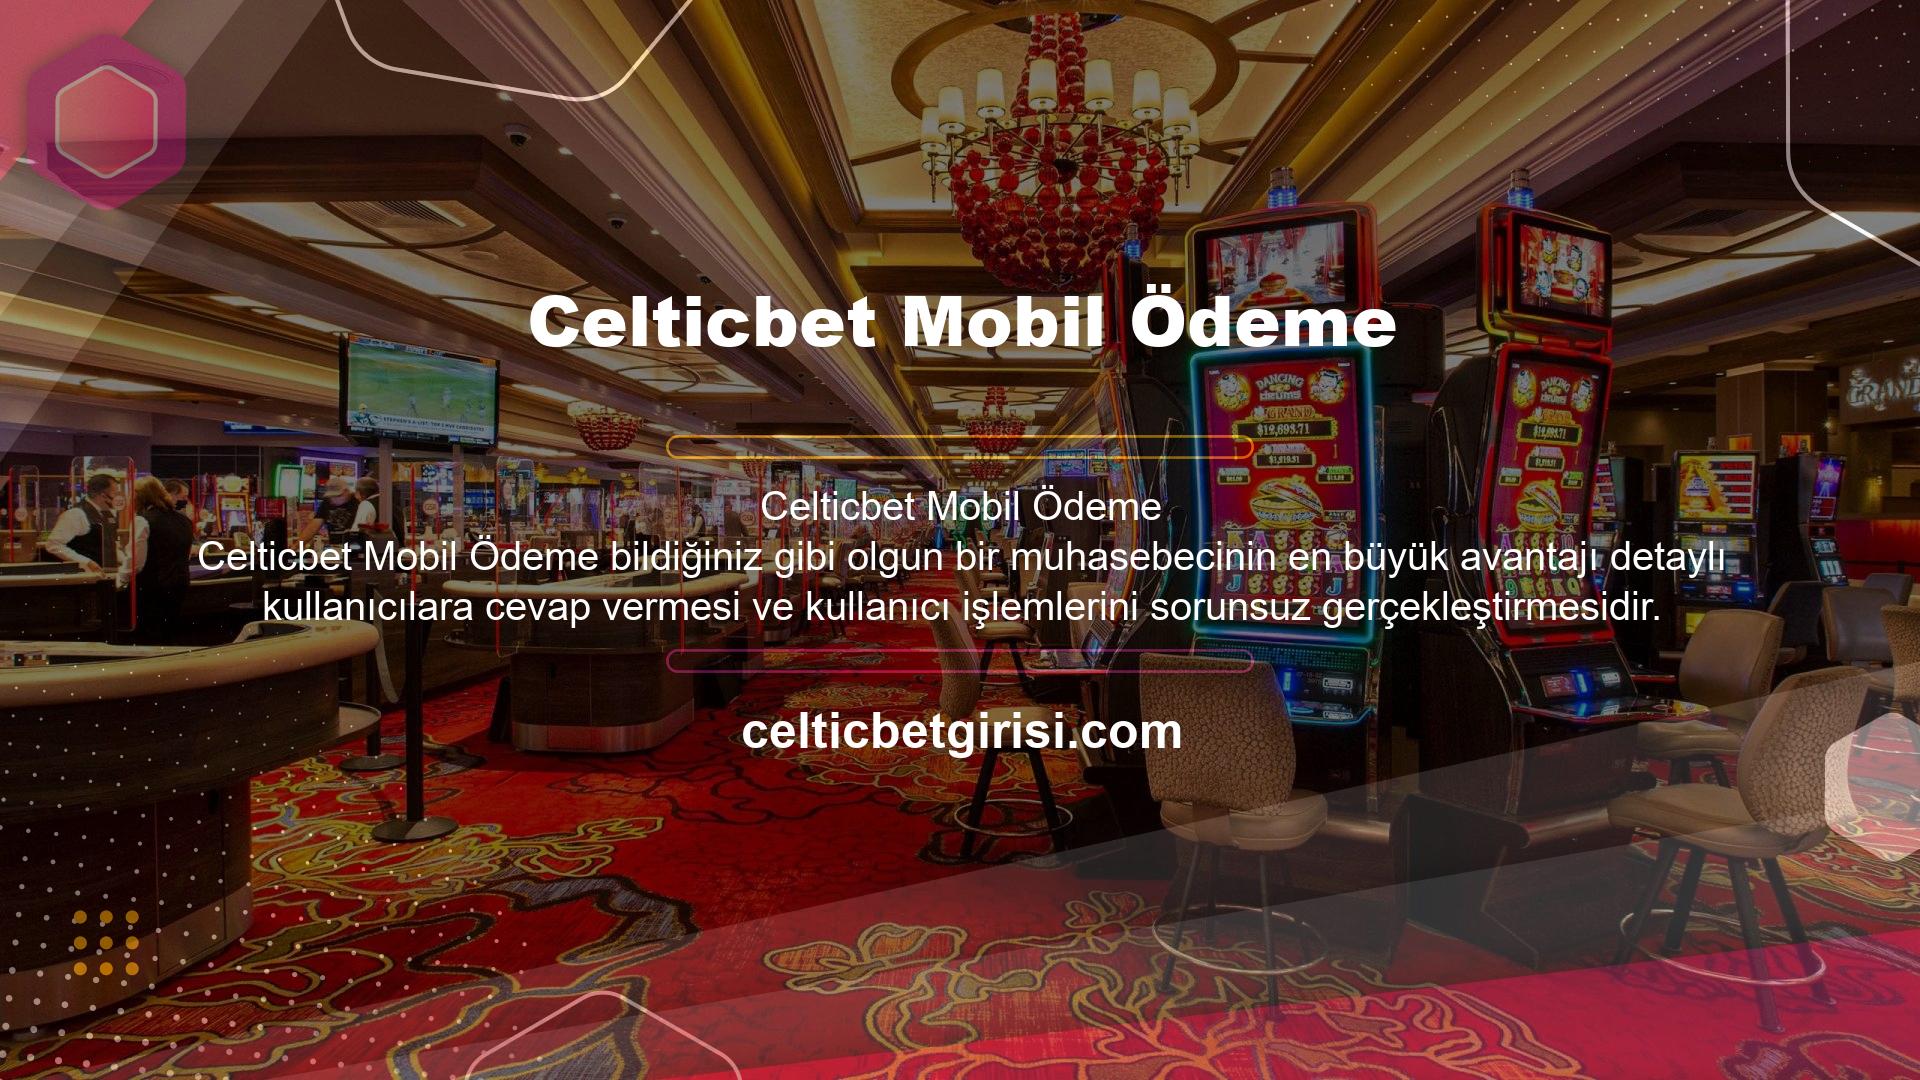 Celticbet mobil ödeme teknolojisi sayesinde daha fazla kullanıcı siteye kolayca para aktarabilir veya siteden elde ettiği bakiyeyi hızlı bir şekilde kendi hesaplarına aktarabilir